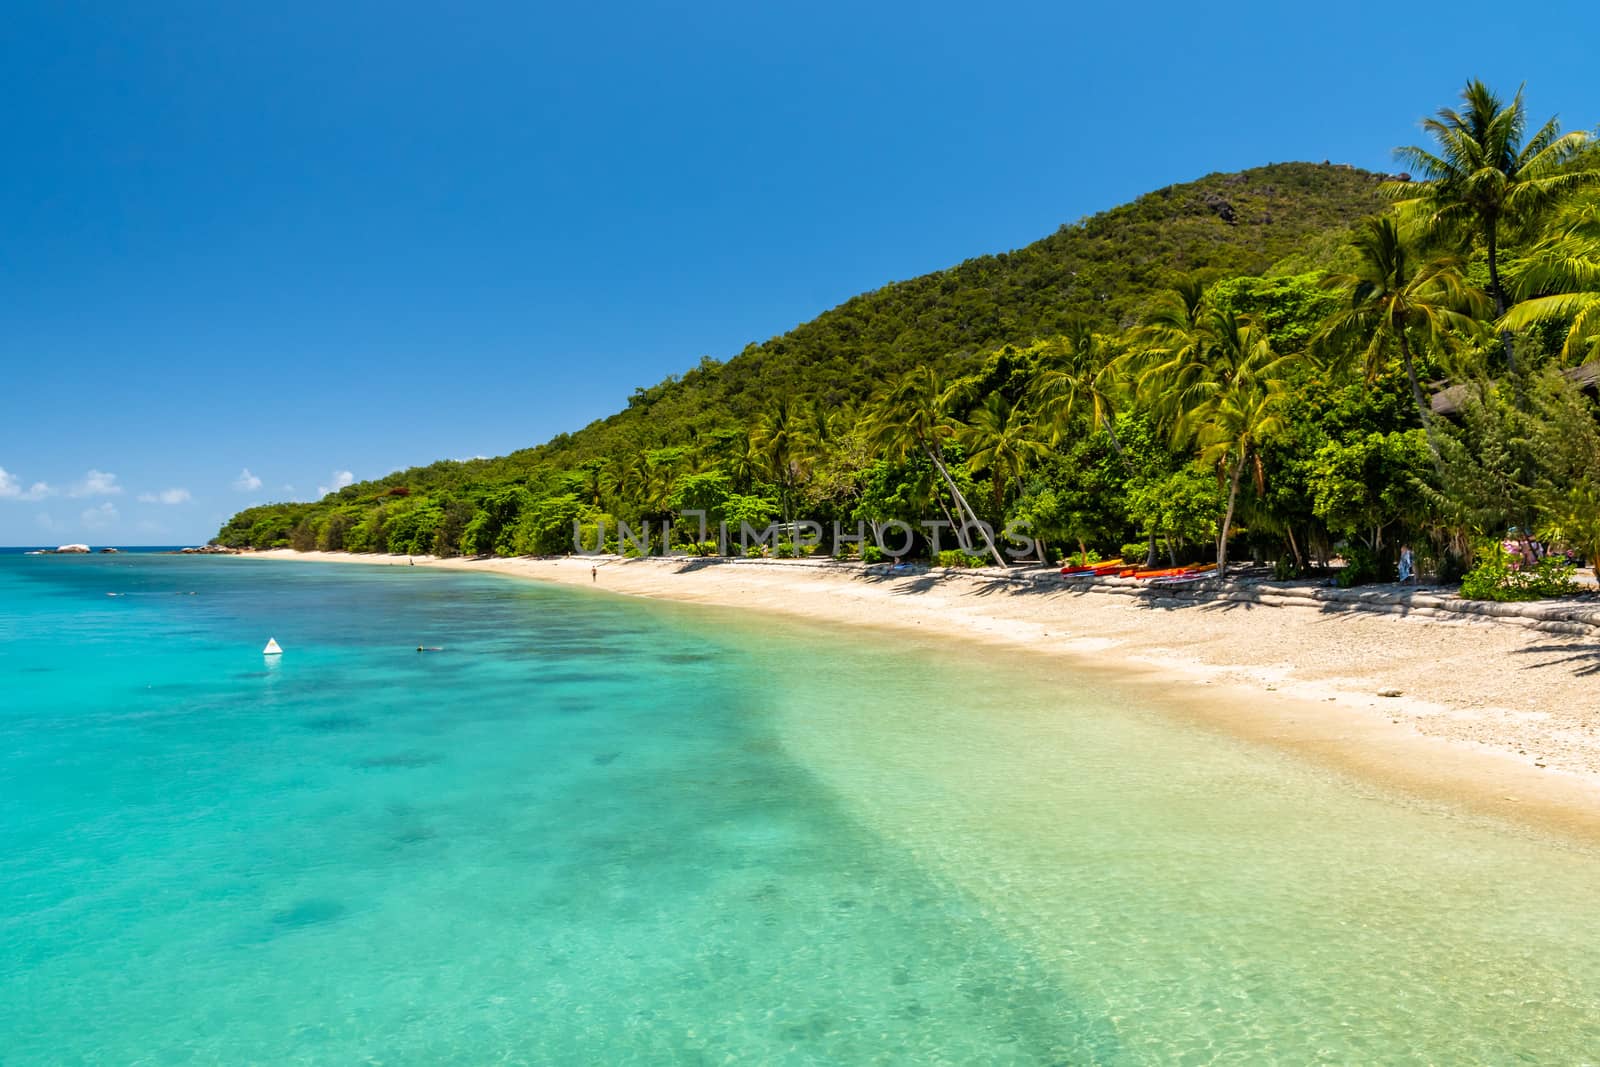 Fitzroy tropical Island beach in a sunny day by mauricallari